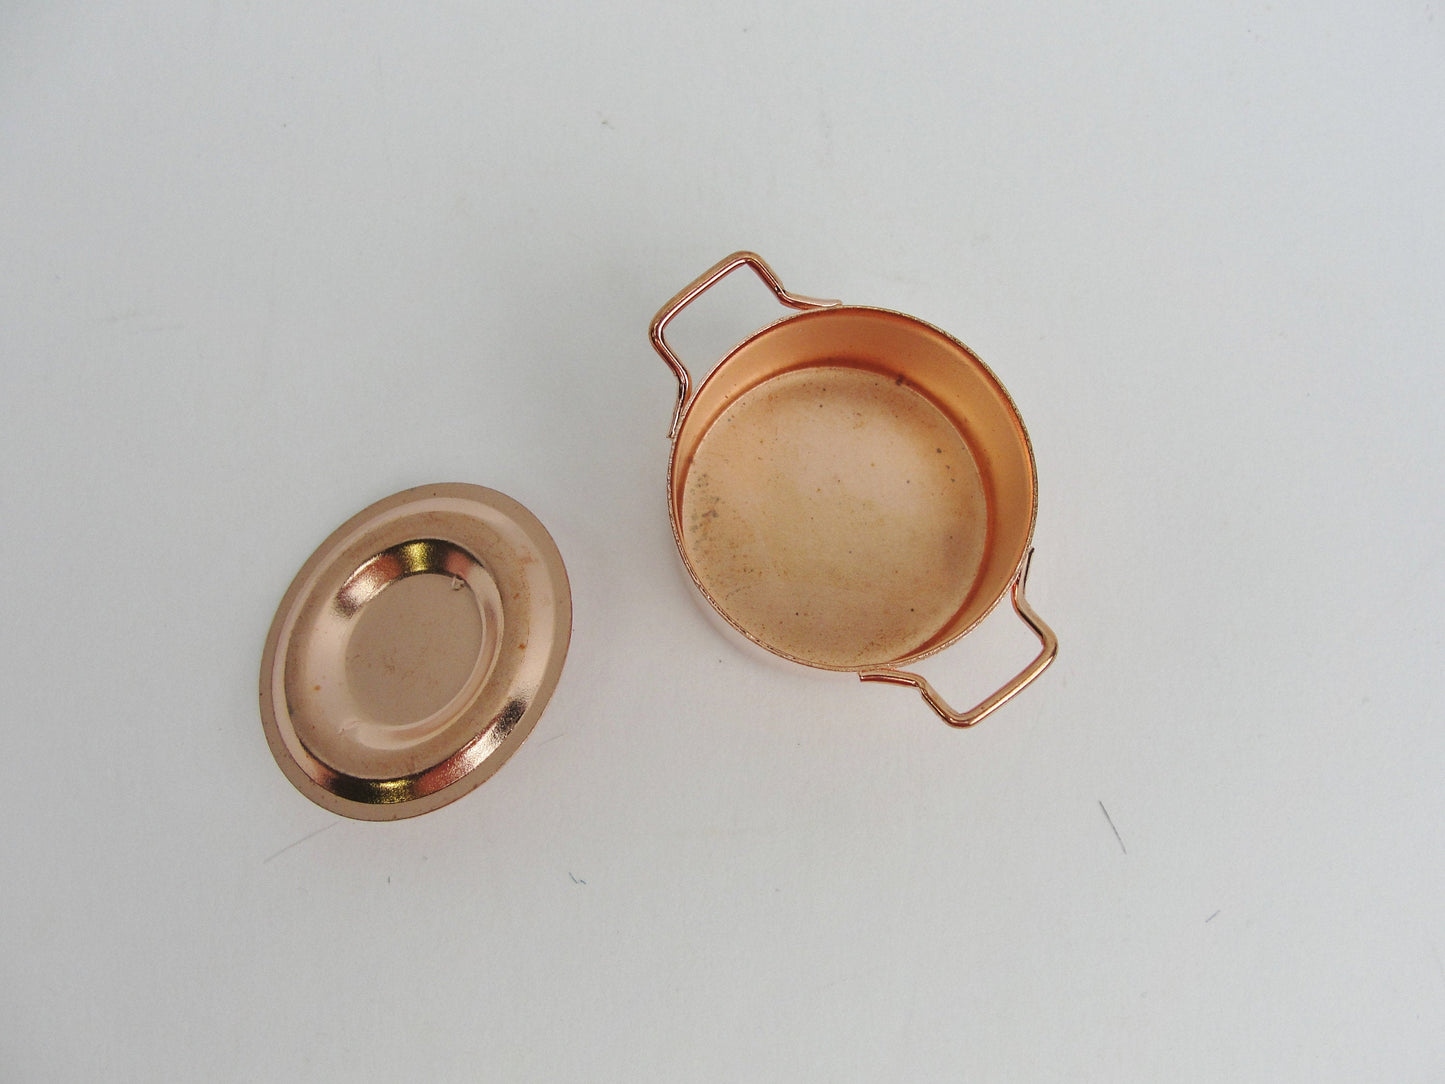 Dollhouse miniature copper pot